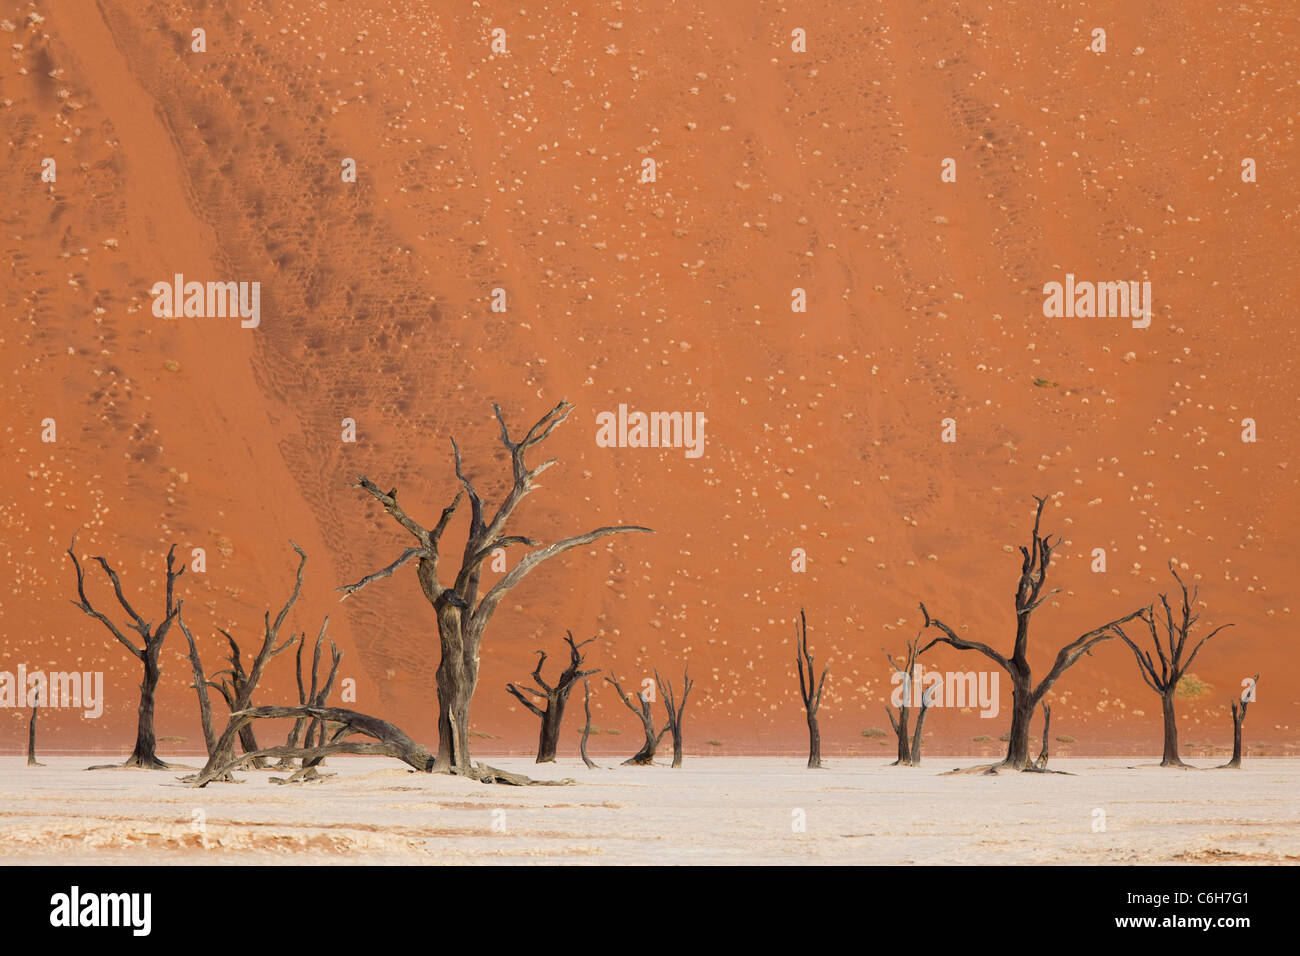 Acacias morts contre l'arrière-plan des dunes de sable Banque D'Images